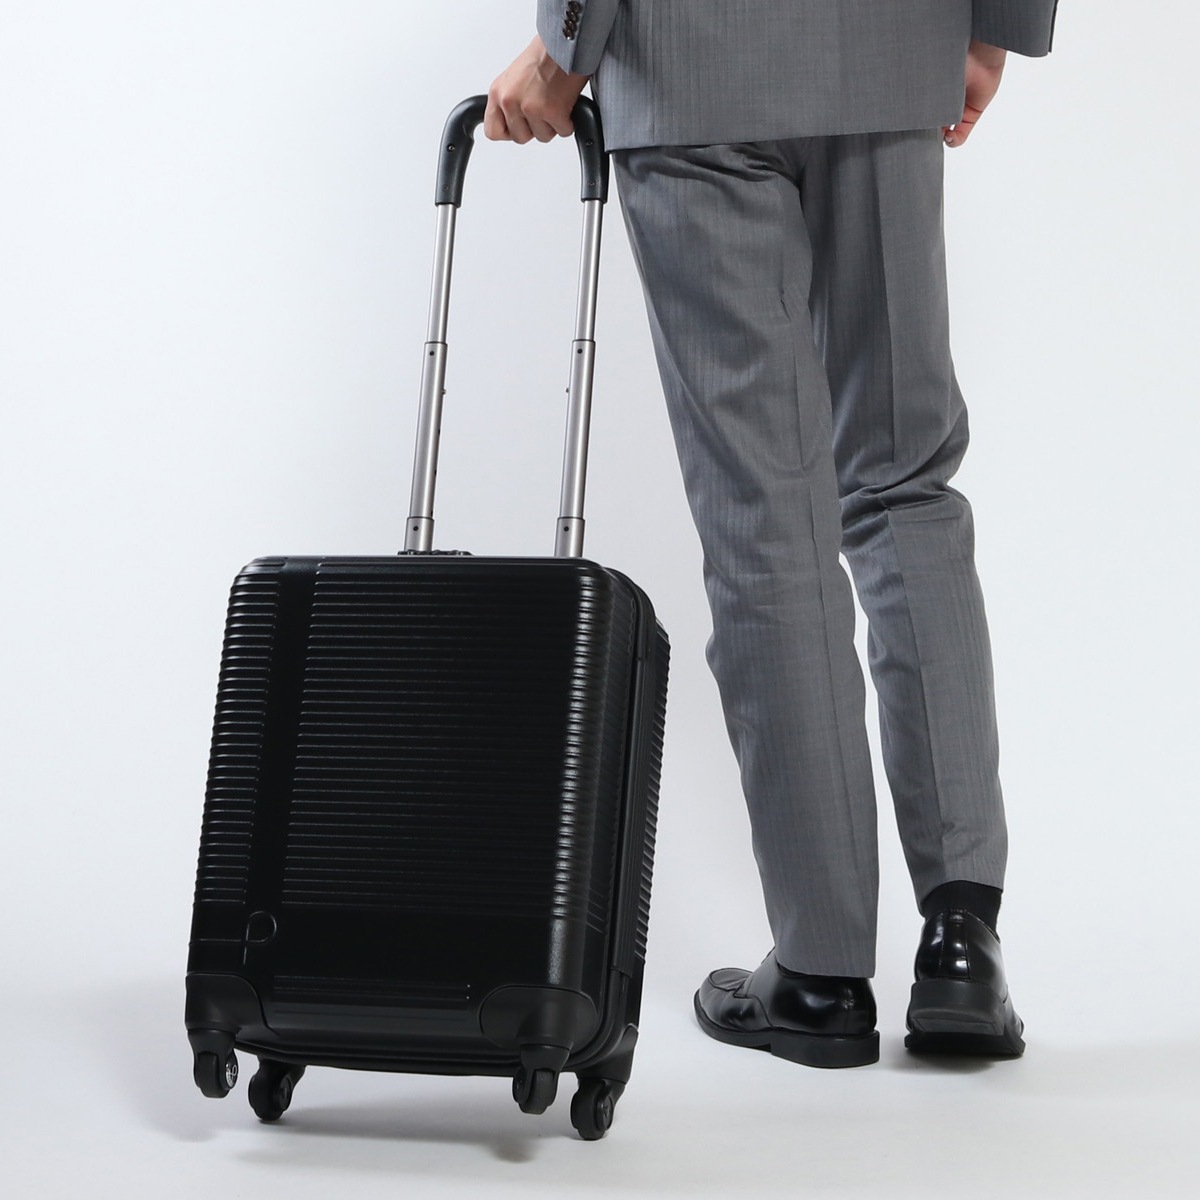 プロテカ スーツケース... : 日用品雑貨 : セール25%OFFプロテカ 格安日本製